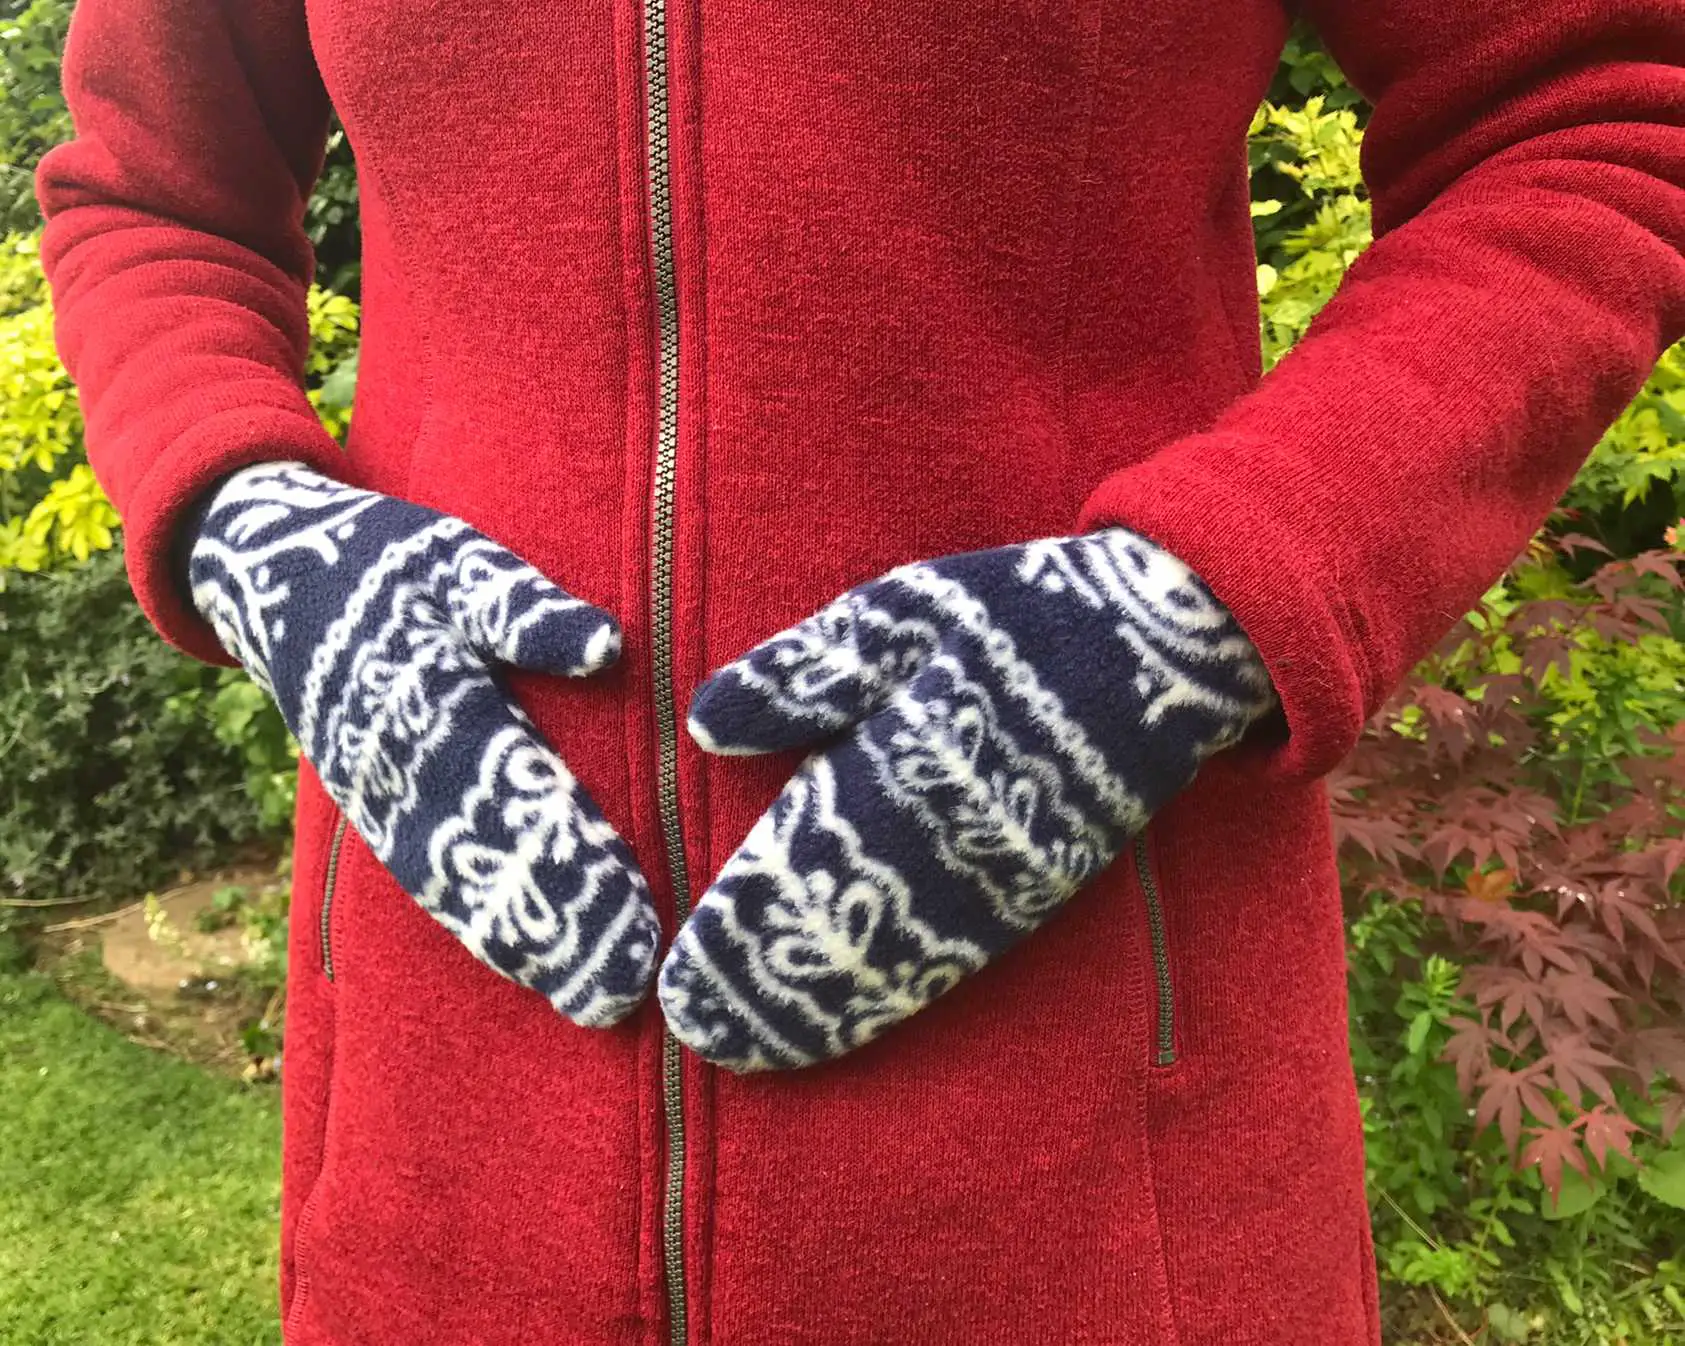 mittens being worn